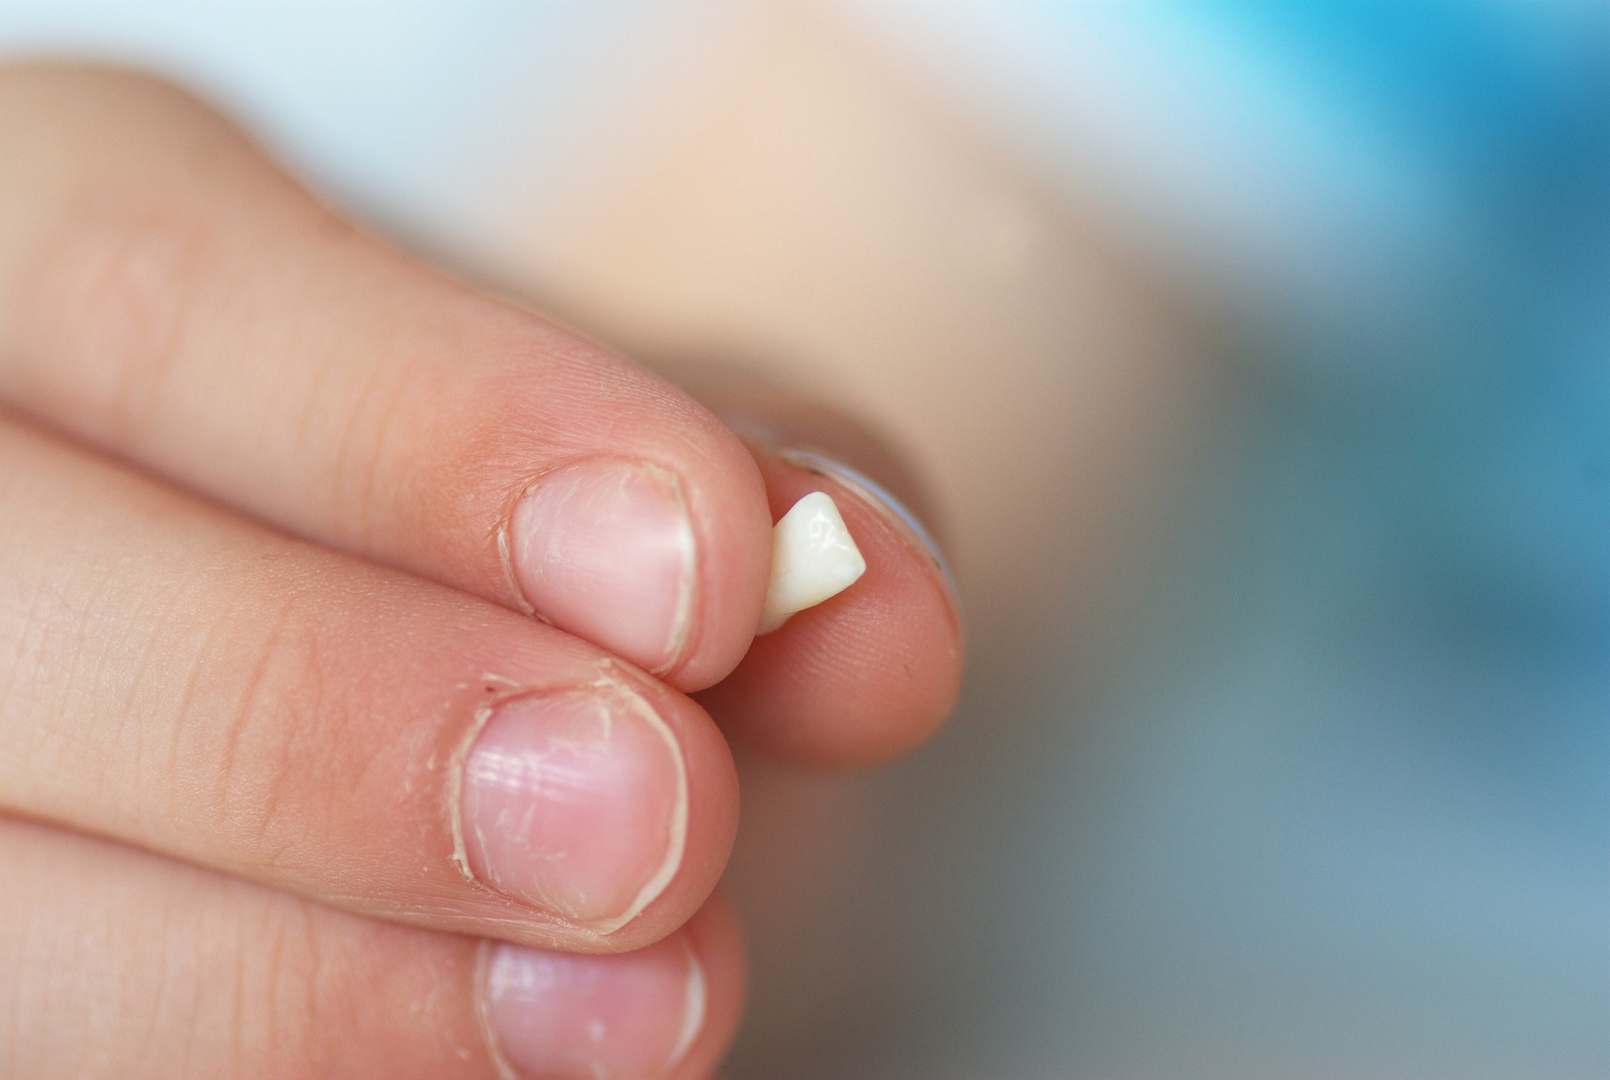 كيف يمكن لمؤشر كتلة الجسم  أن يزيد من خطر فقدان الأسنان؟